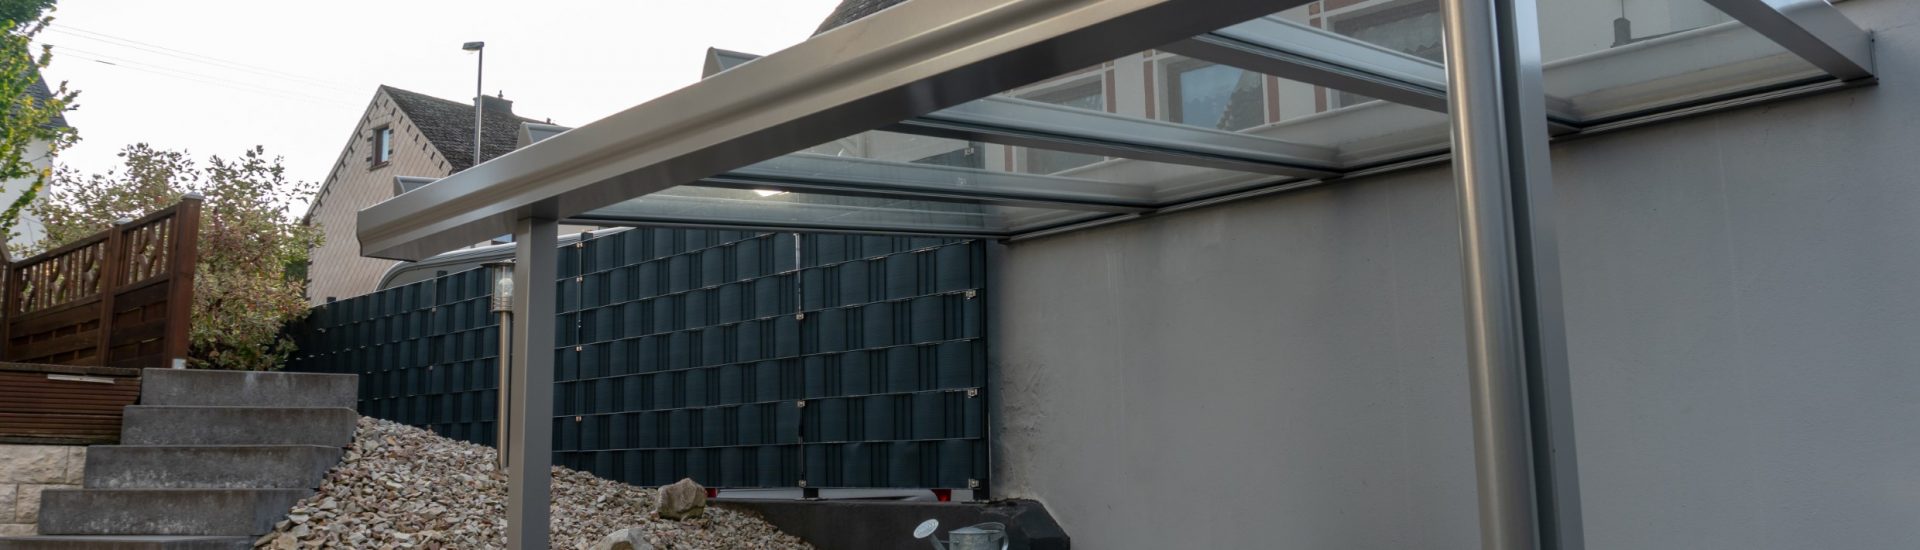 Terrassenüberdachung Aluminium